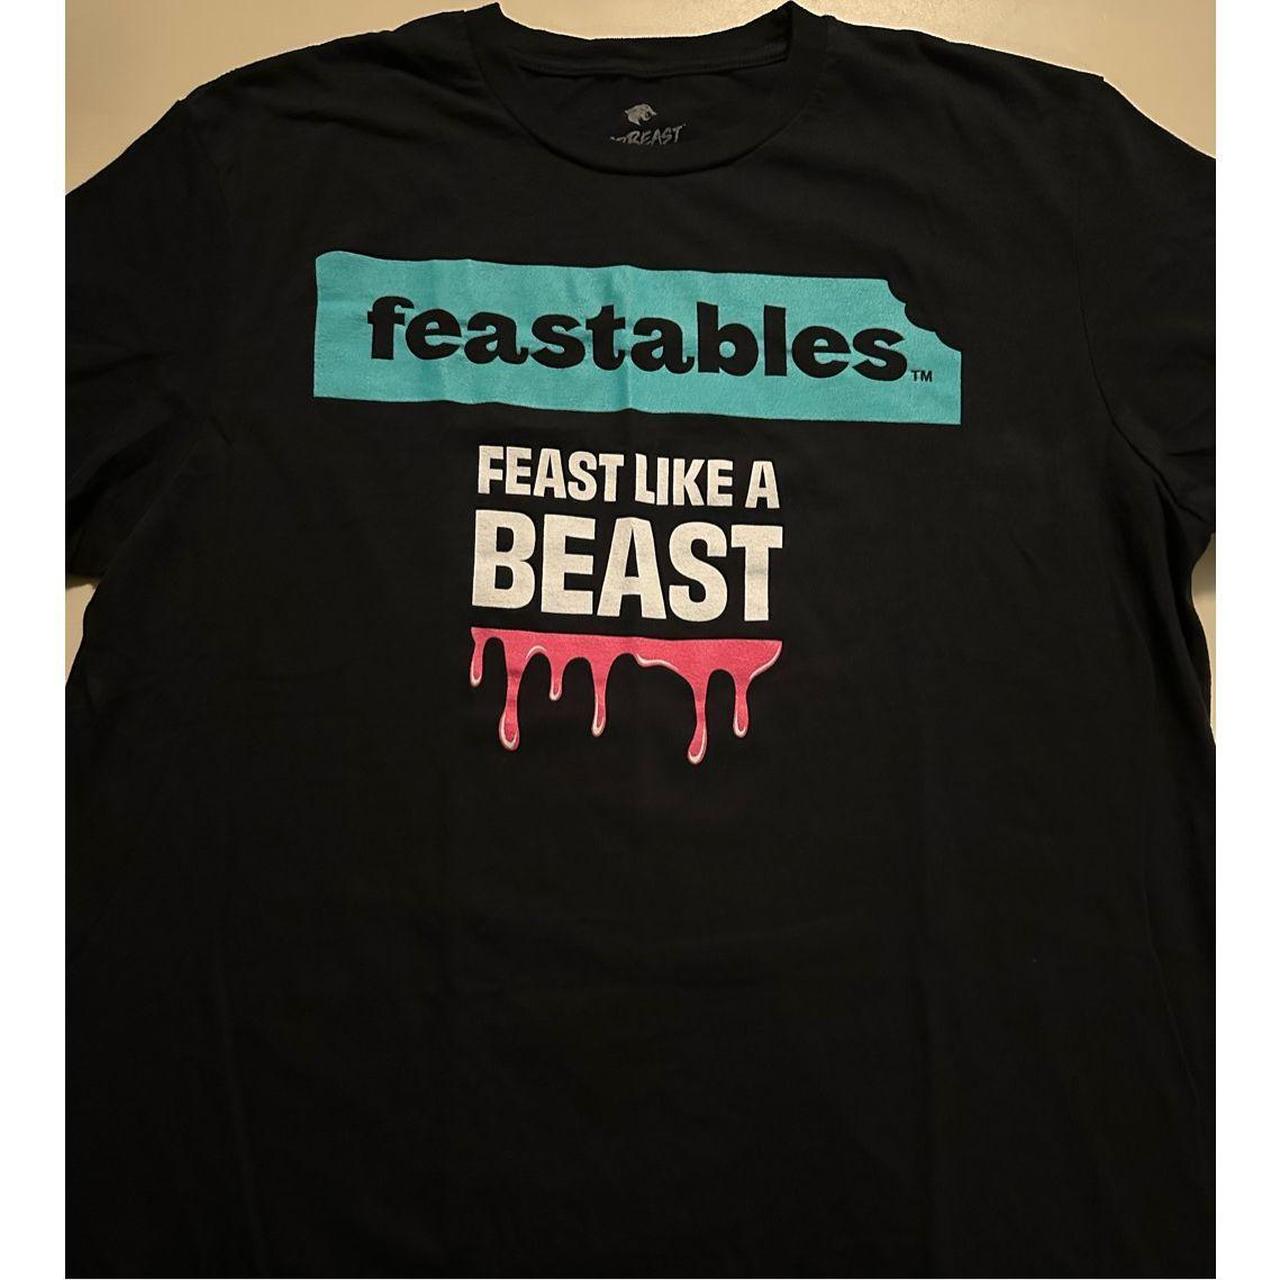 Feast on Mr Beast